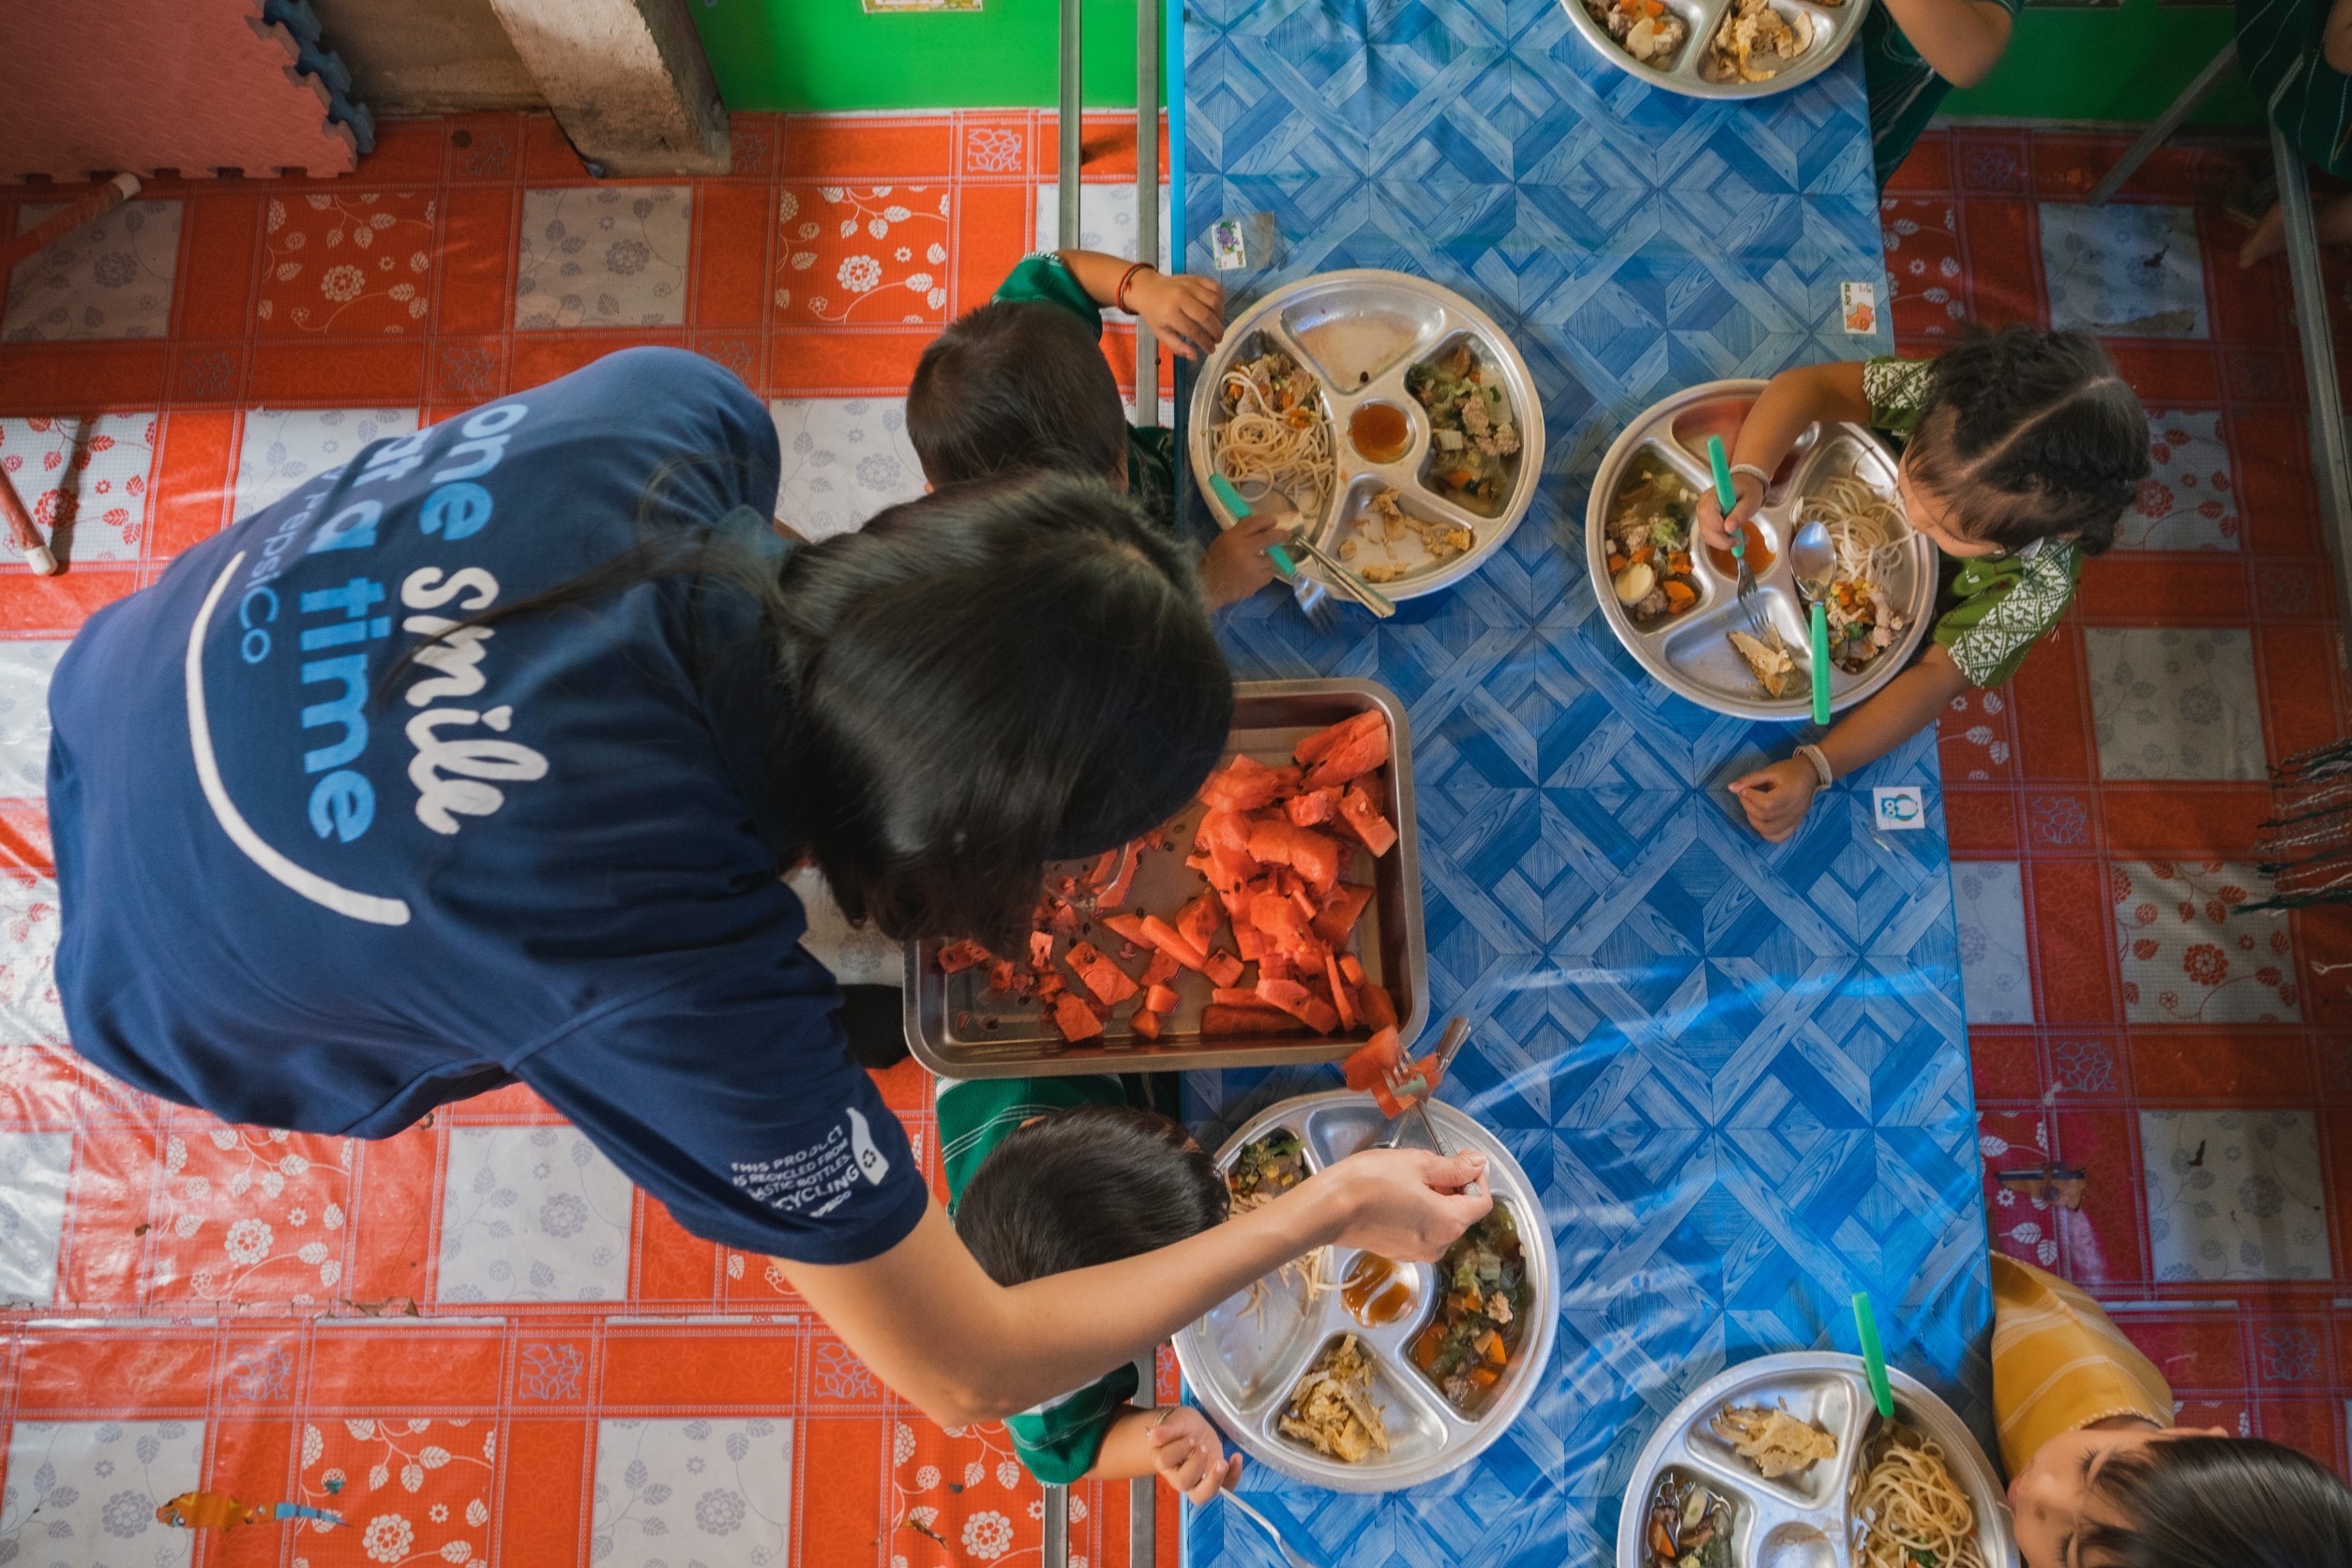 โครงการอาหารล้านมื้อเพื่อกำลังใจให้คนไทยสู้ภัยโควิด-19 หรือ Food for Good: Millions of Meals